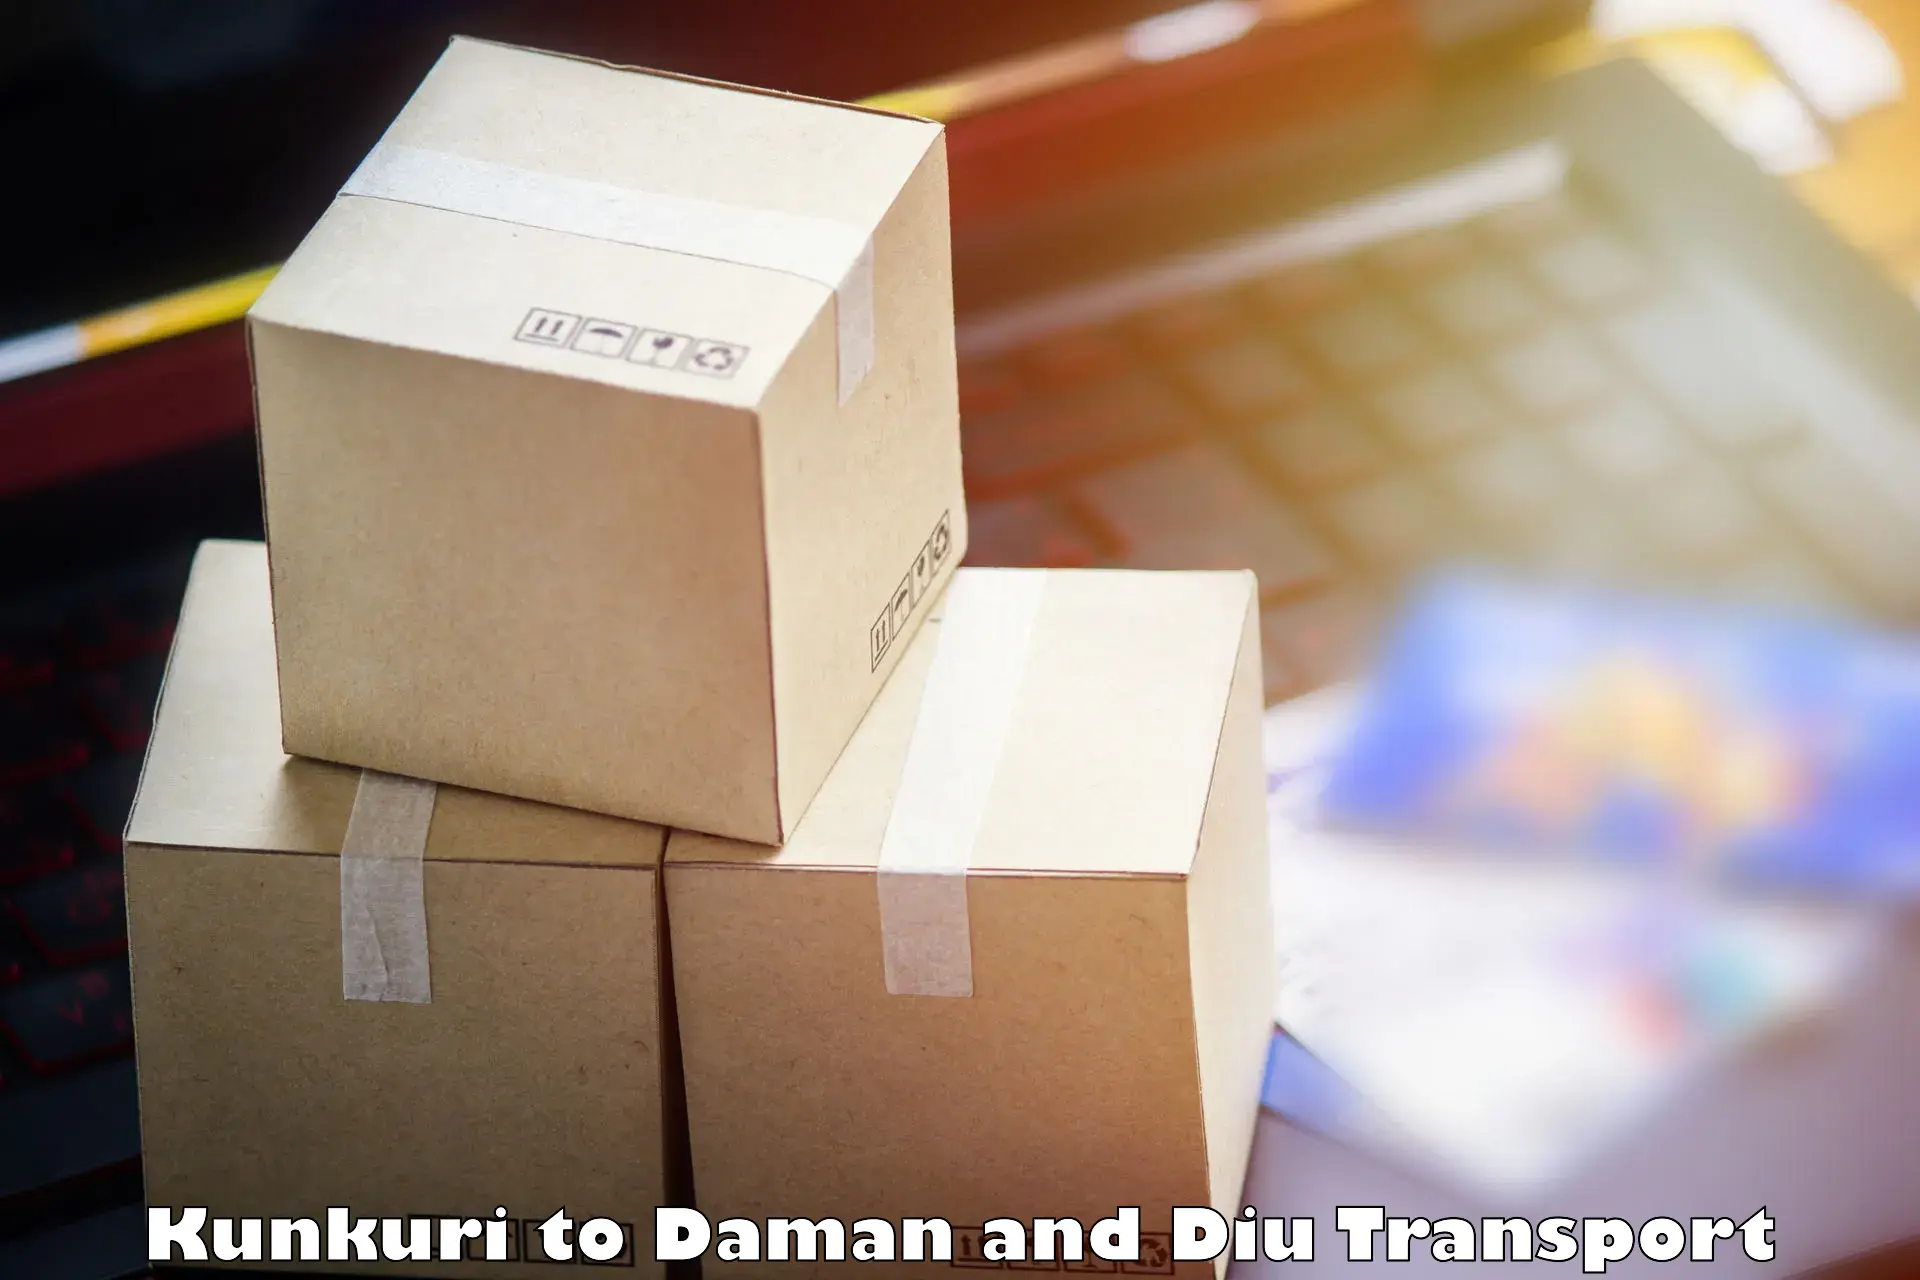 Daily parcel service transport Kunkuri to Daman and Diu